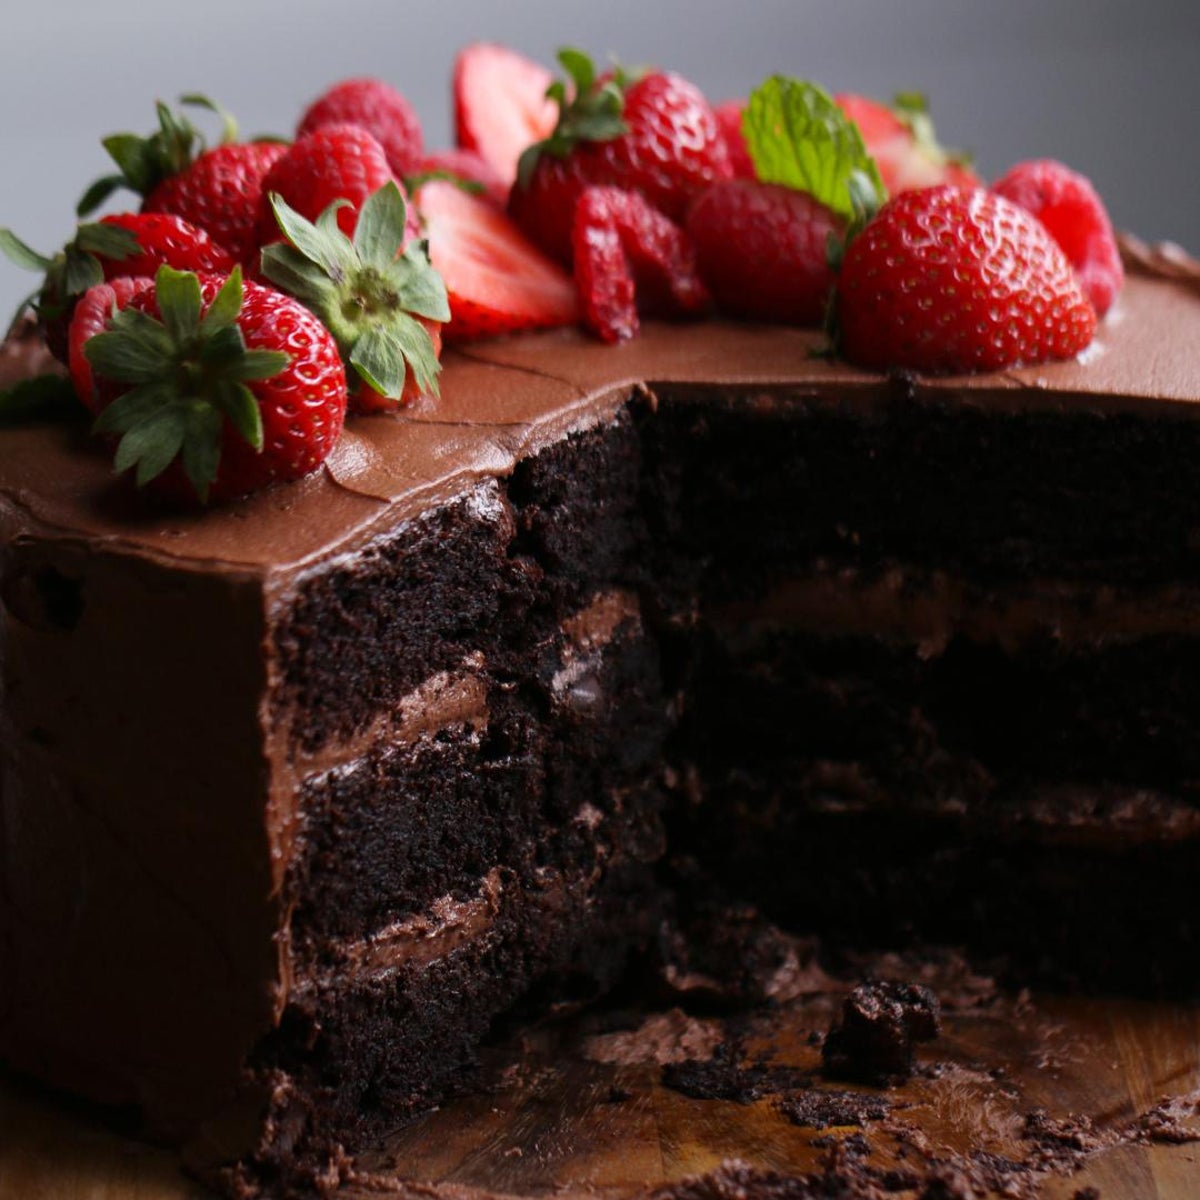 yummy chocolate birthday cake